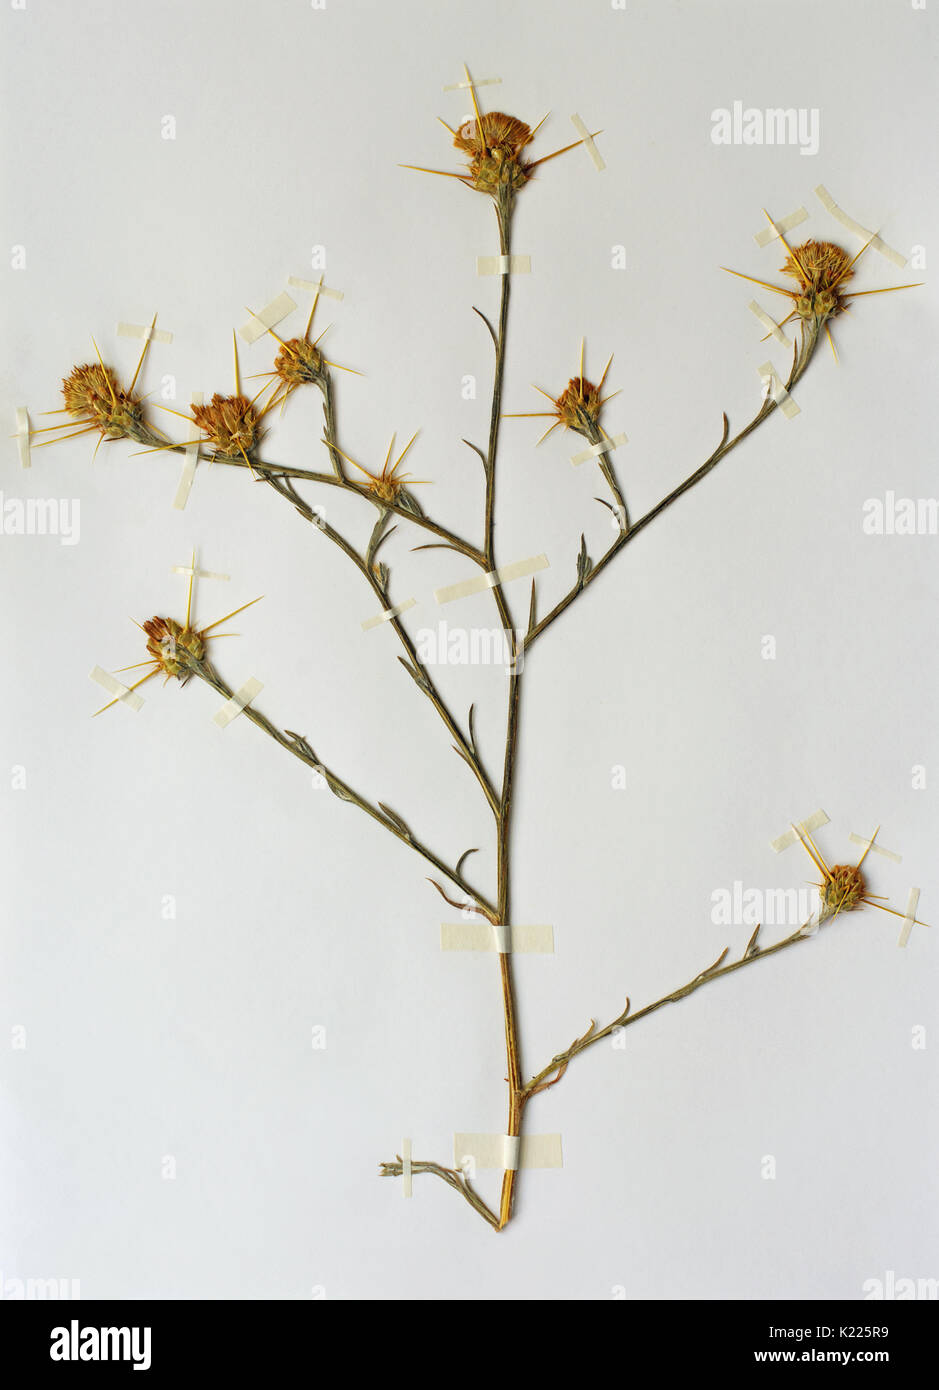 Ein herbarium Blatt mit Centaure solstitialis, der gelbe Stern - Thistle oder Golden starthistle, aus der Familie der Asteraceae; native zum Mittelmeer r Stockfoto